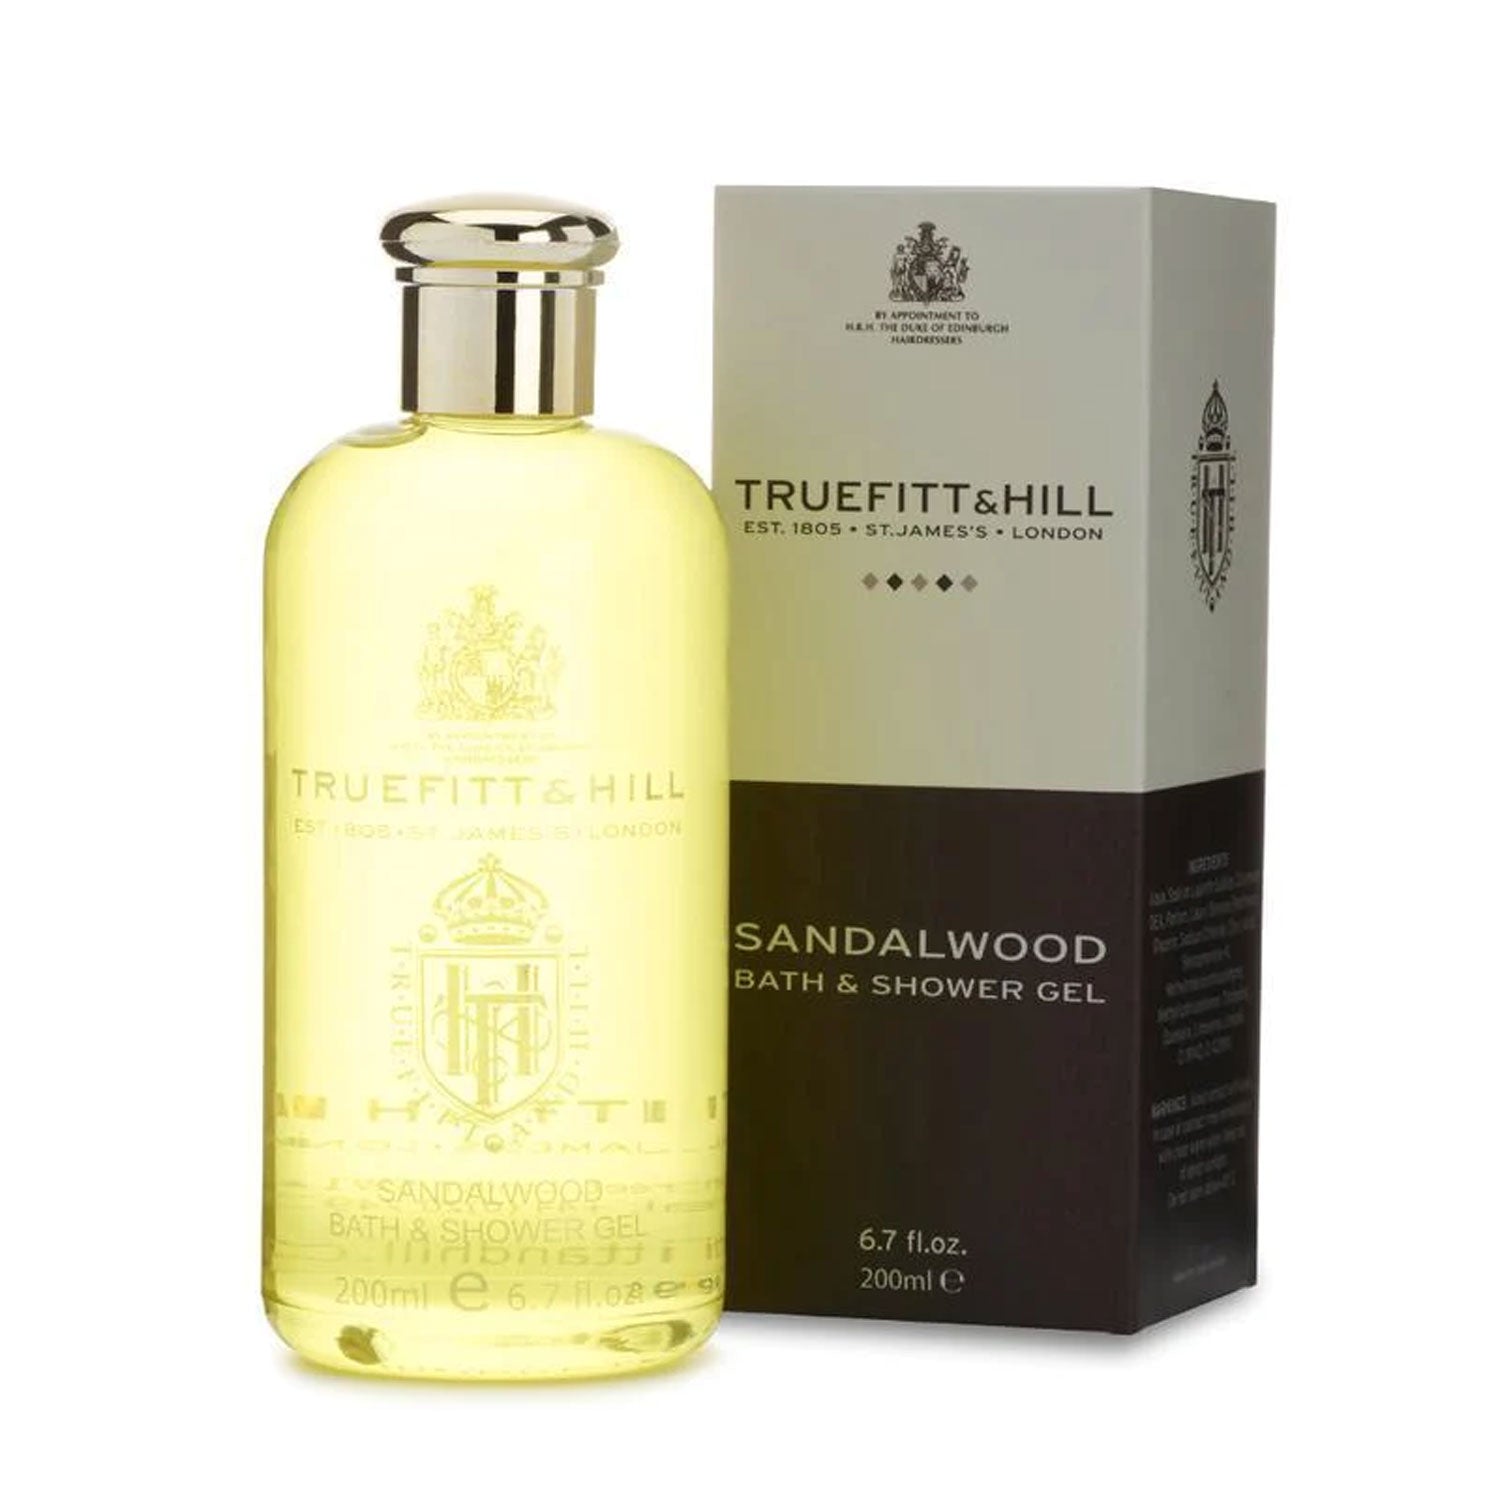 Truefitt & Hill Sandalwood Bath & Shower Gel 200ml - Orcadia